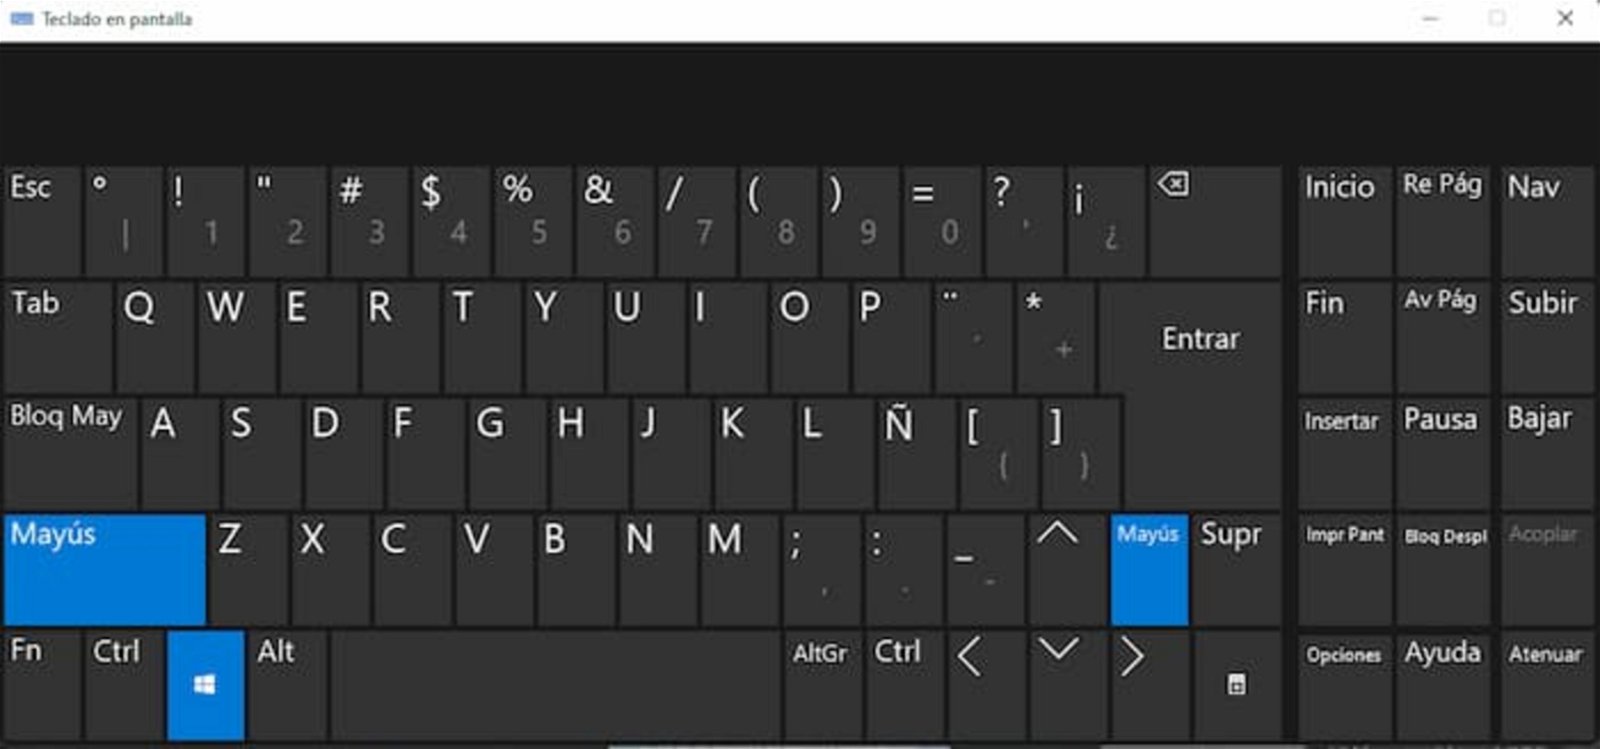 El teclado en pantalla es otra solución útil para escribir la letra Ñ y otras que no funcionen correctamente en el teclado físico